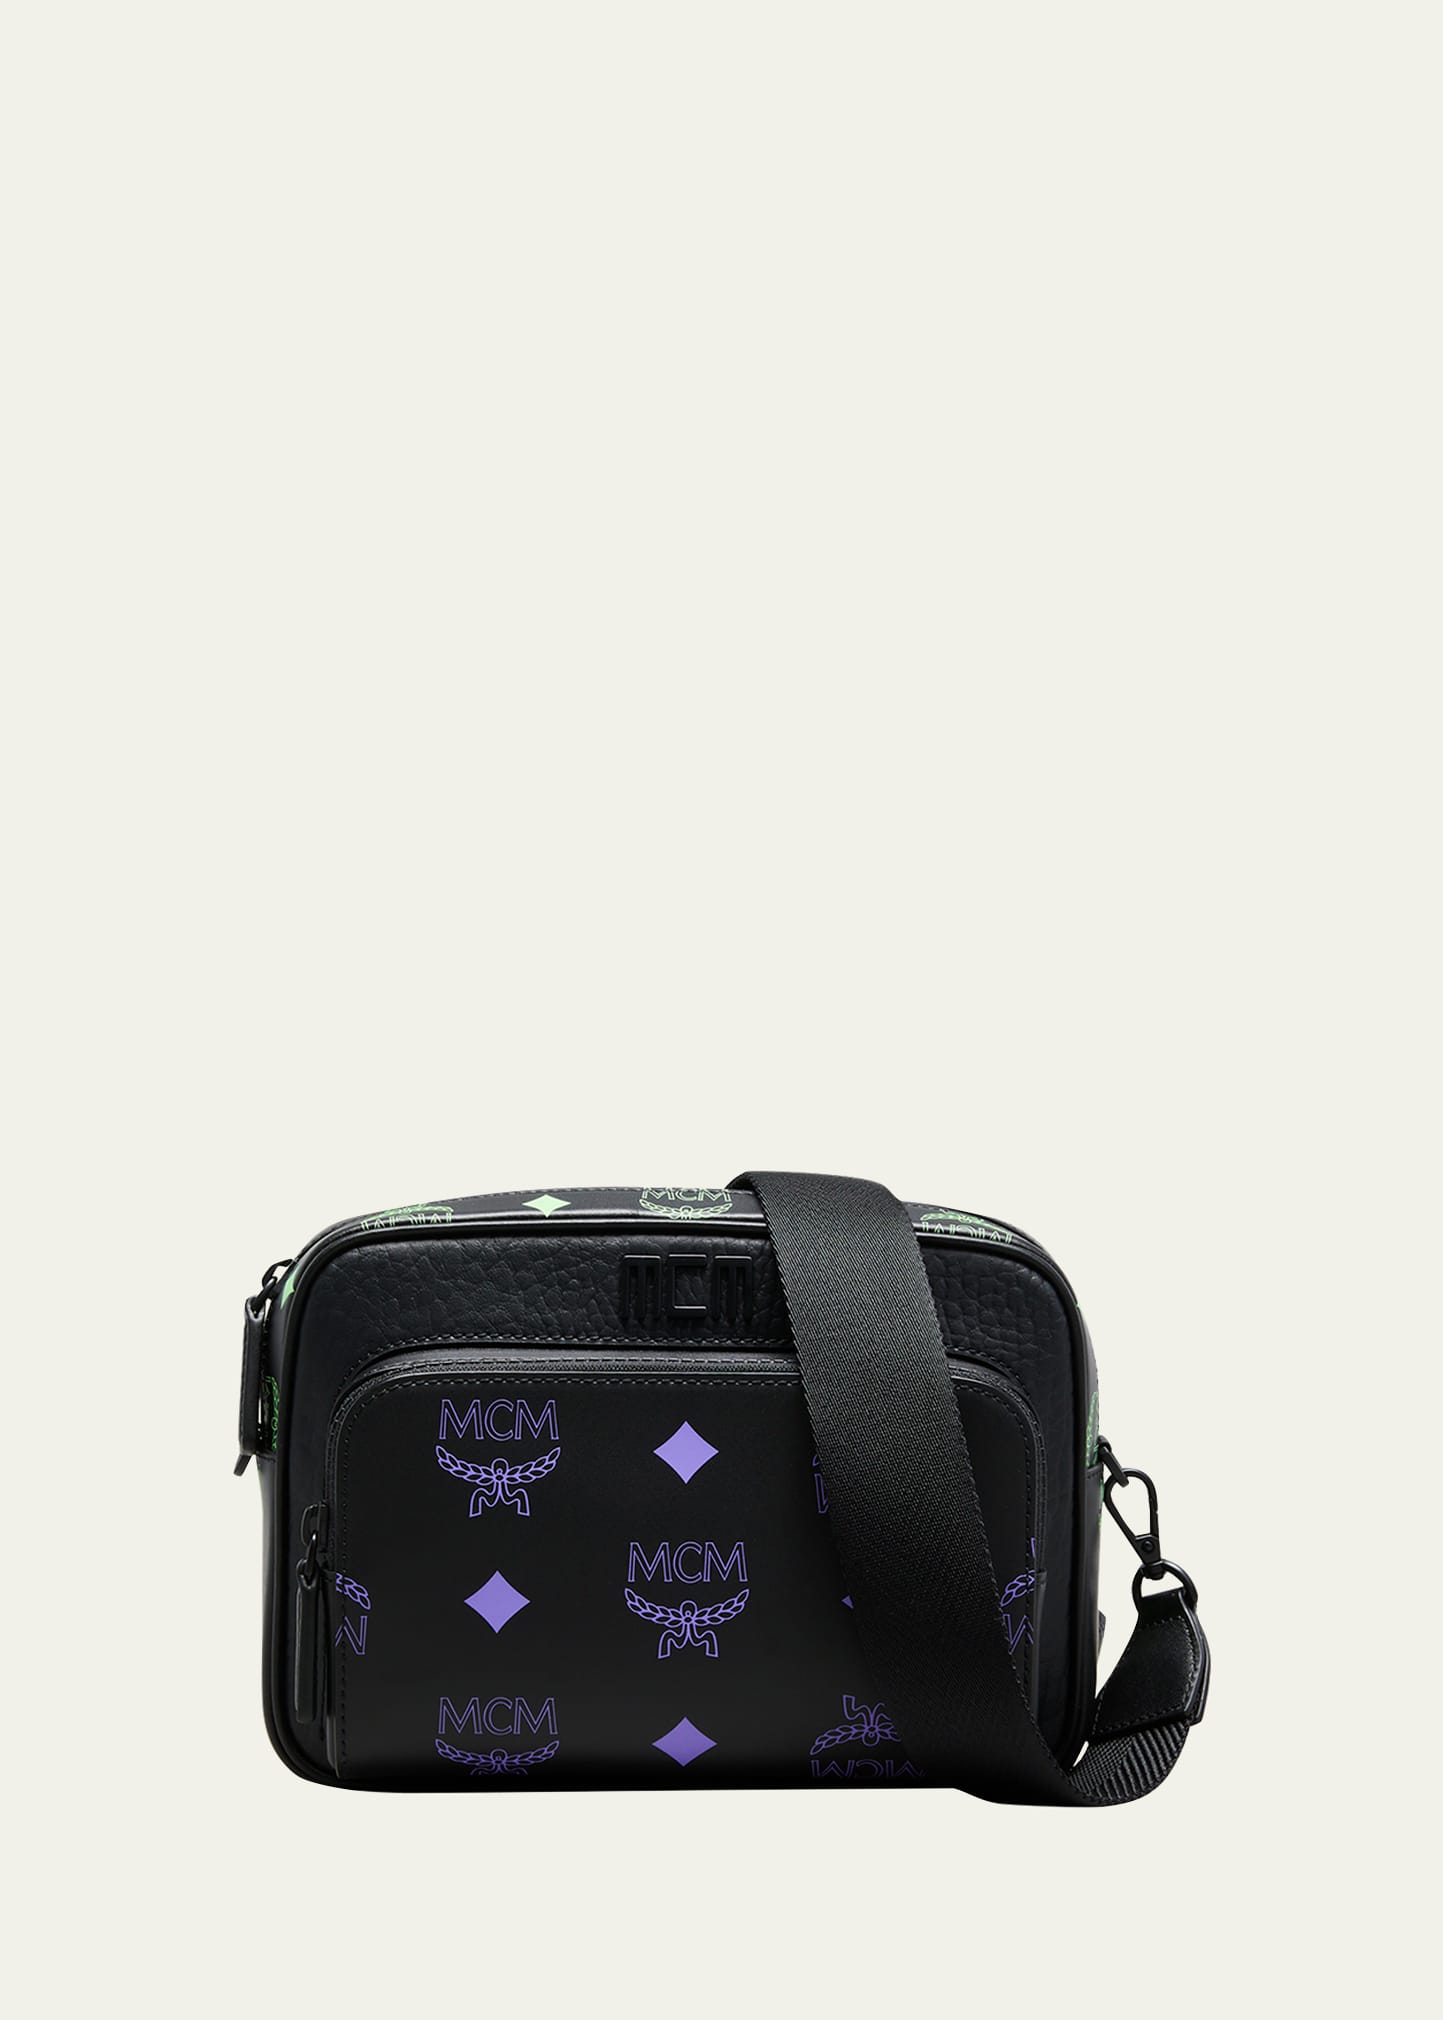 Mcm Men's Visetos Leather Crossbody Bag In Dahlia Purplesum